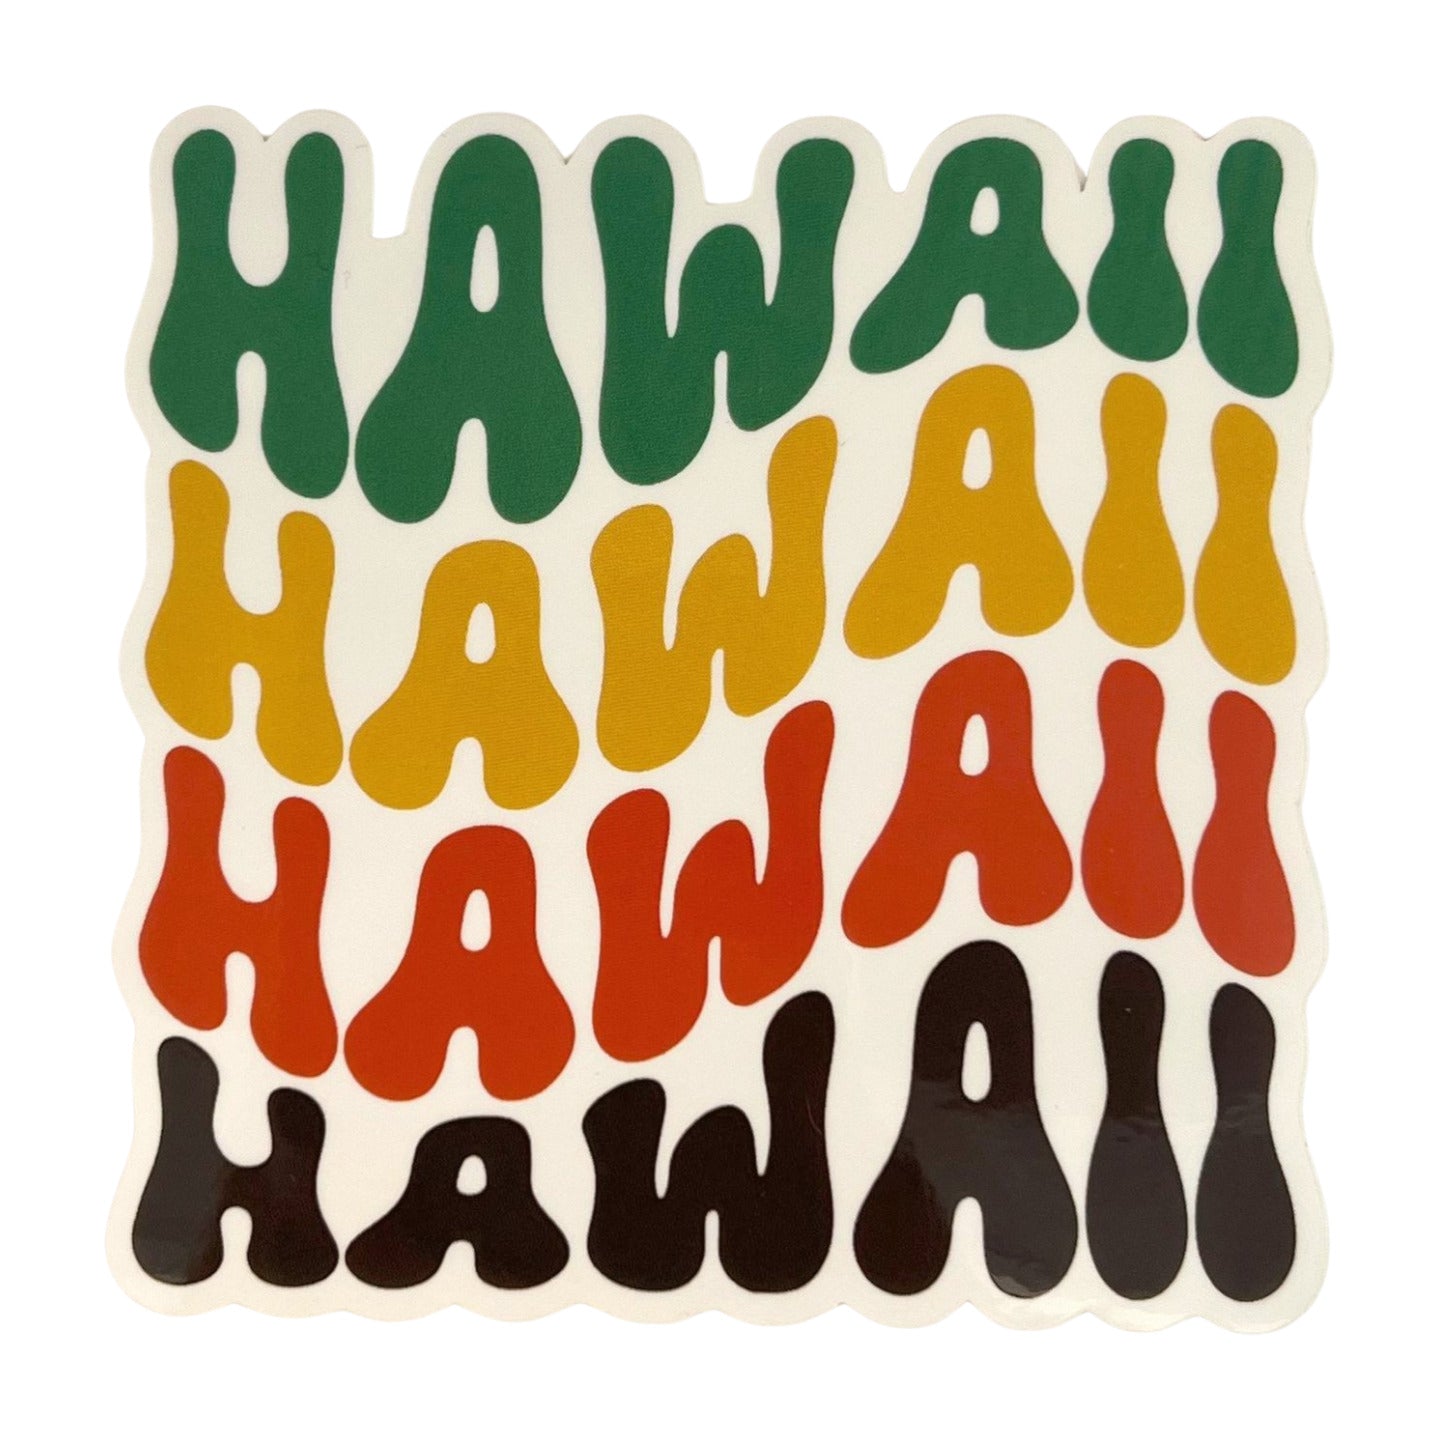 Pop-Up Mākeke - Mahea Leah - Stacked Hawaii Sticker